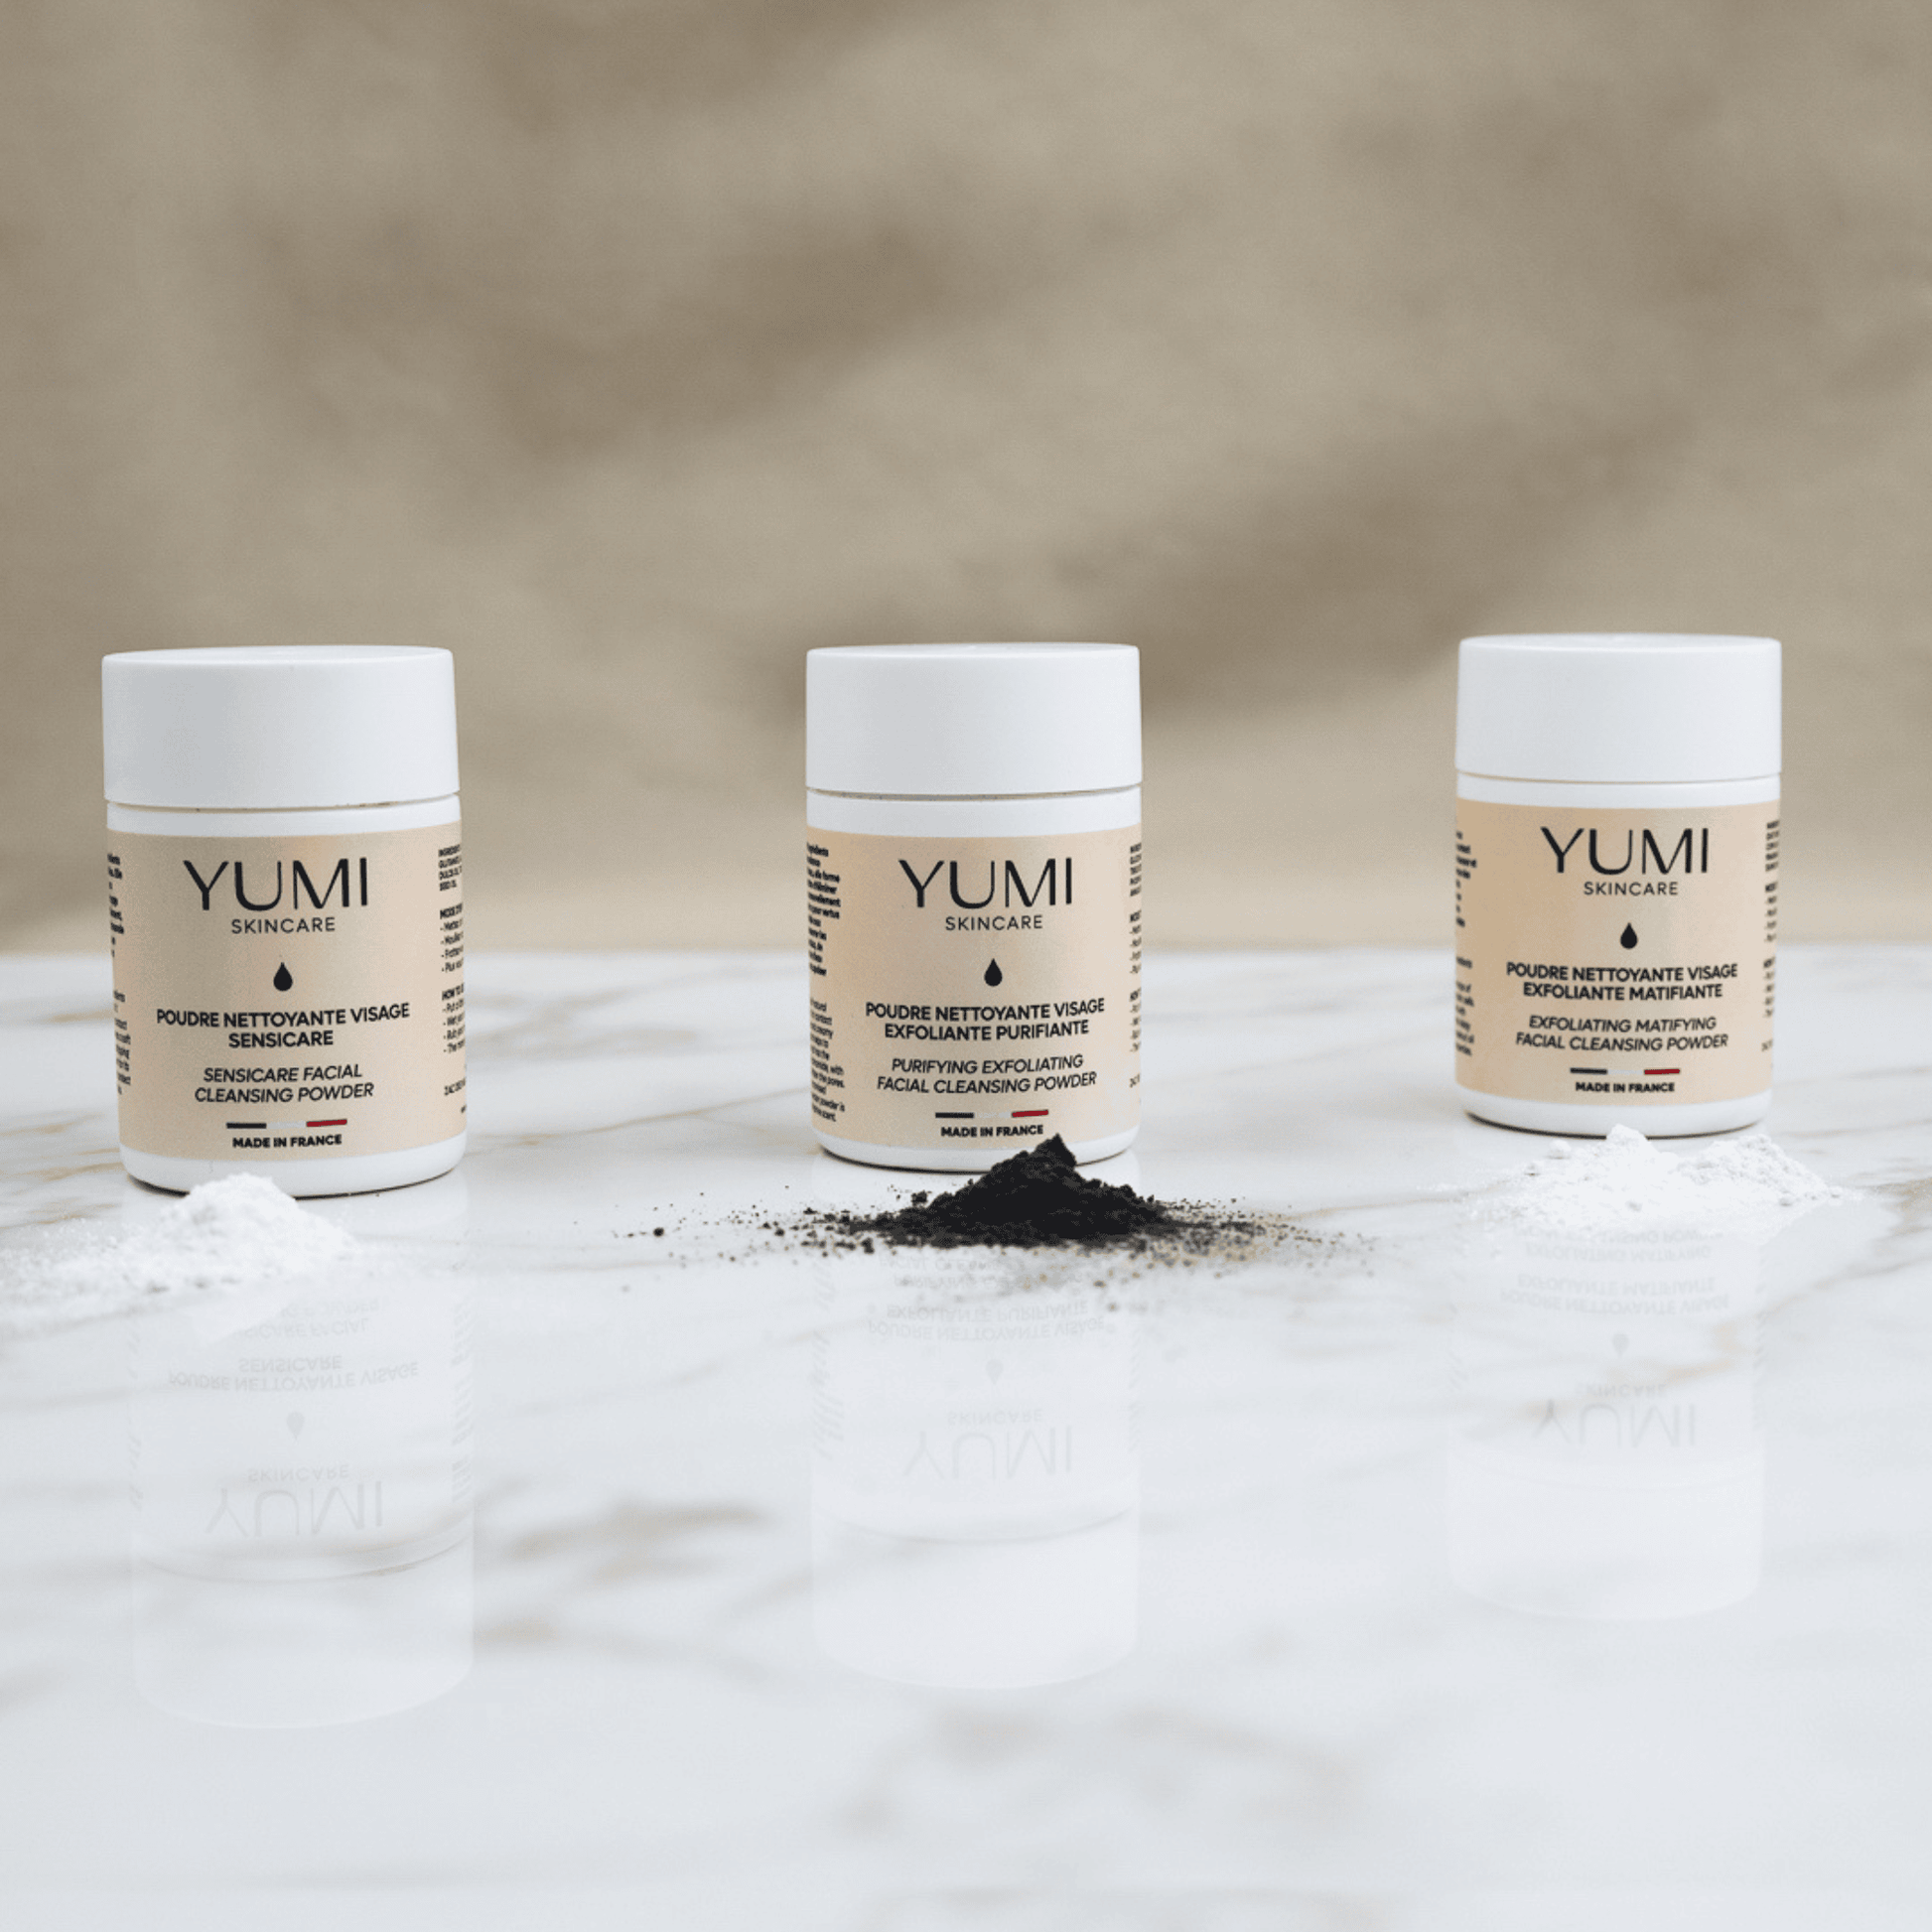 Yumi Skincare Facial Cleansing Powders